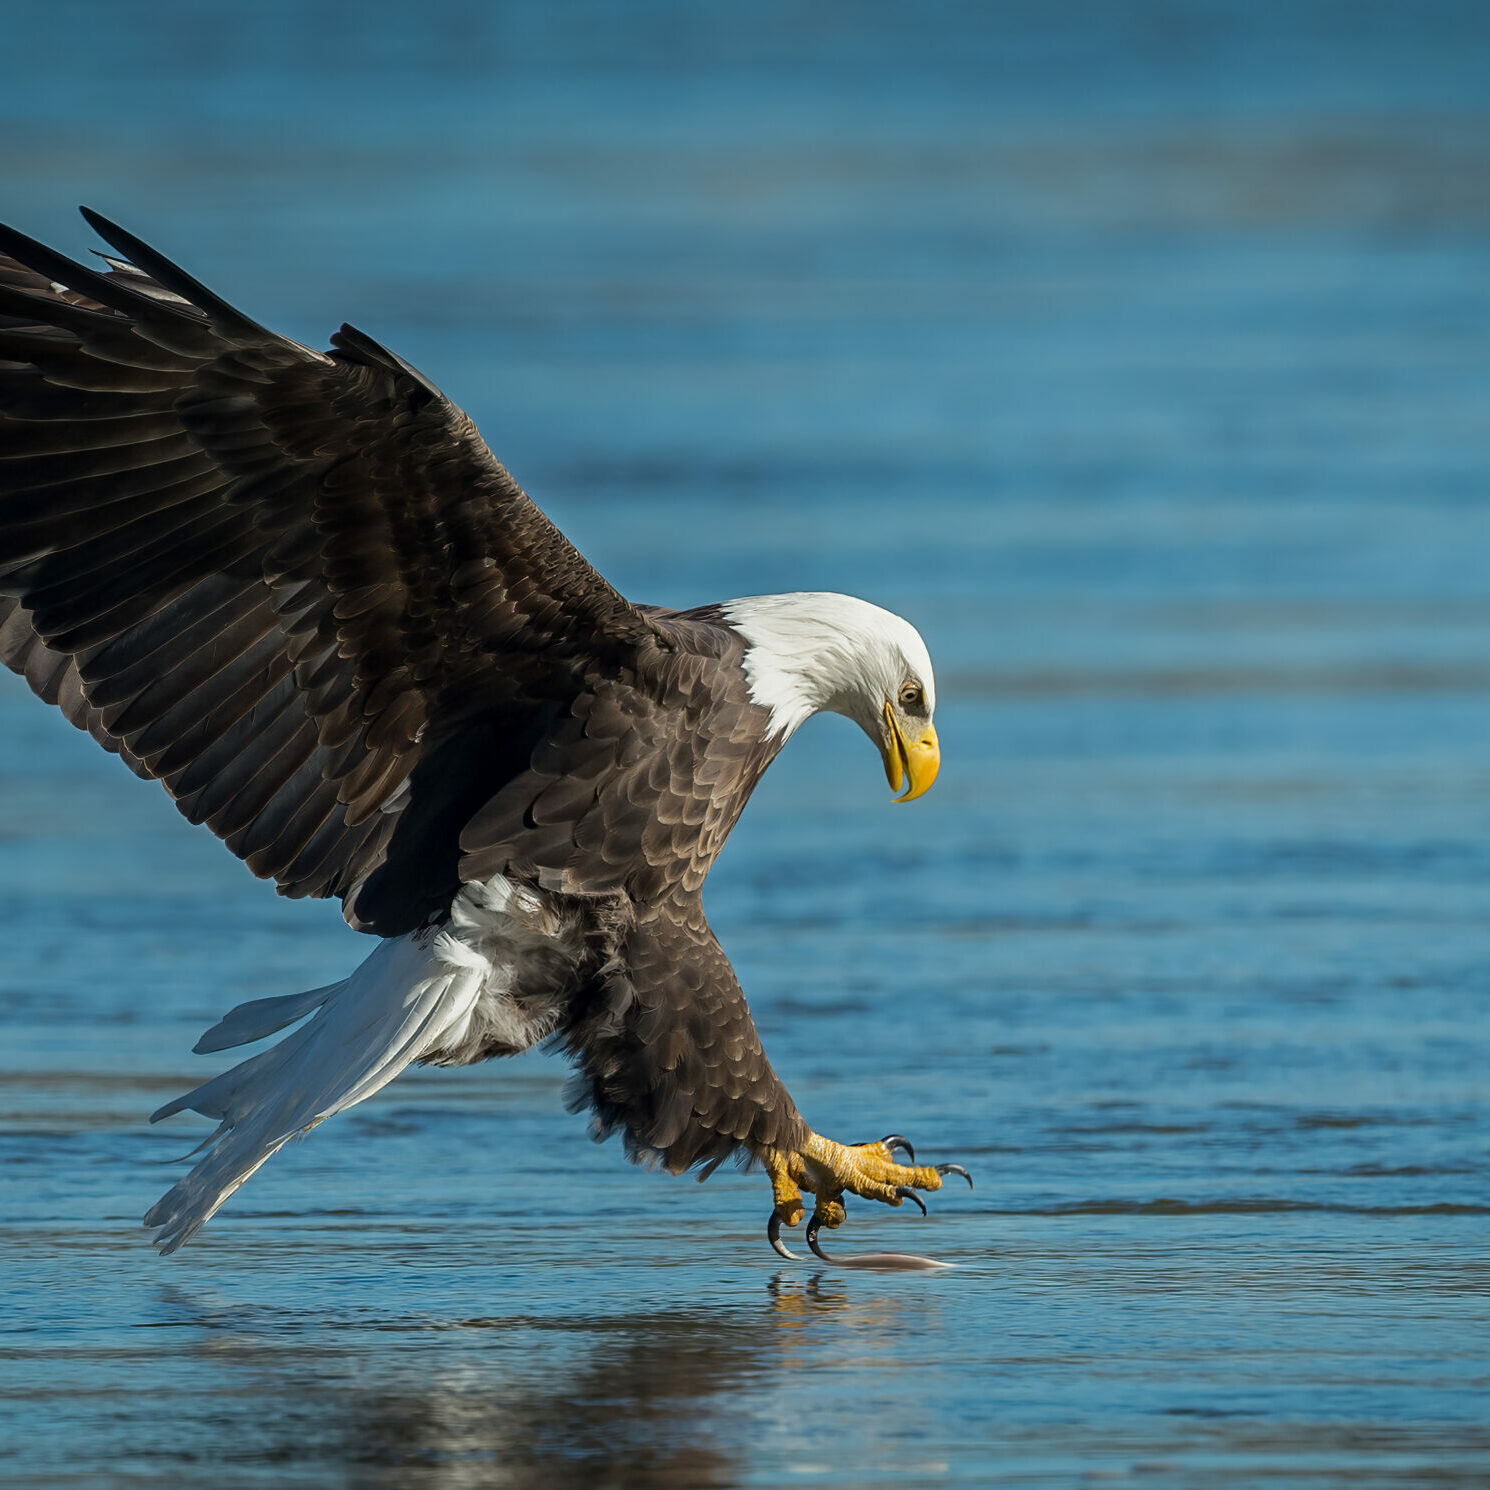 A bald eagle fishing